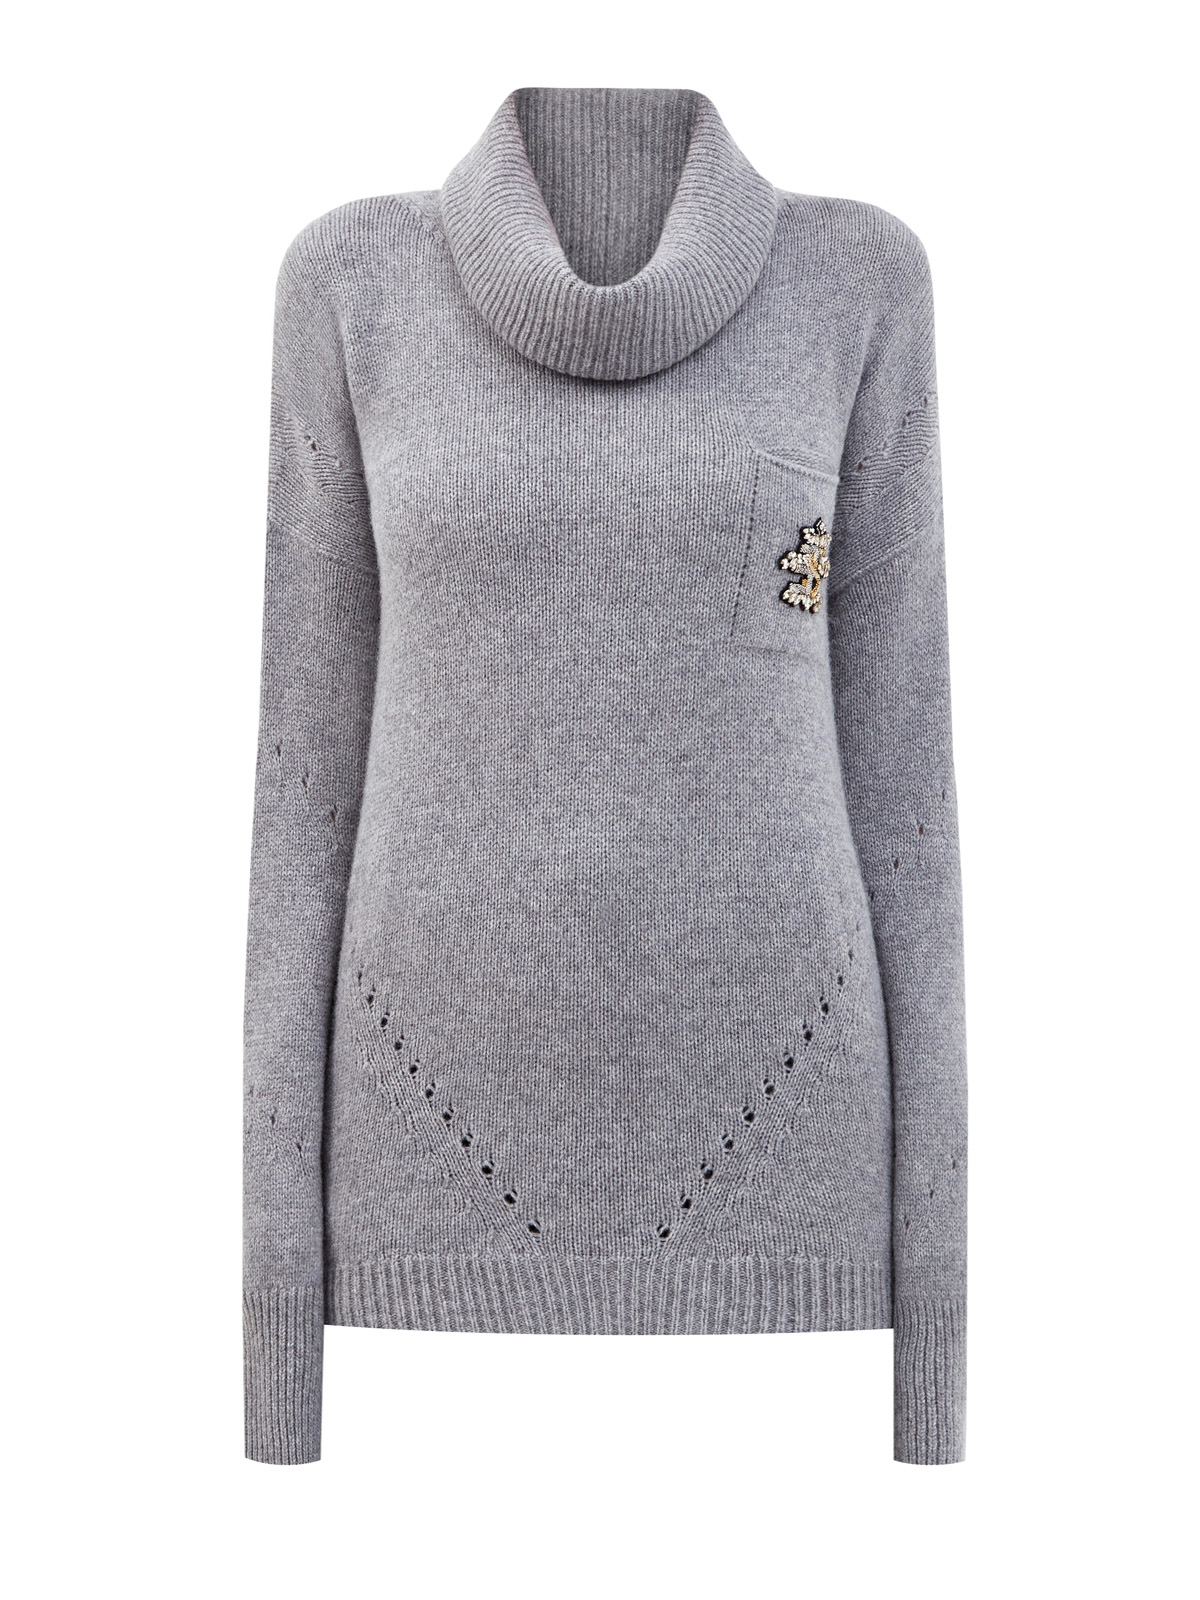 Удлиненный свитер из пряжи на основе шерсти и кашемира ERMANNO SCERVINO, цвет серый, размер 38;40;42 - фото 1